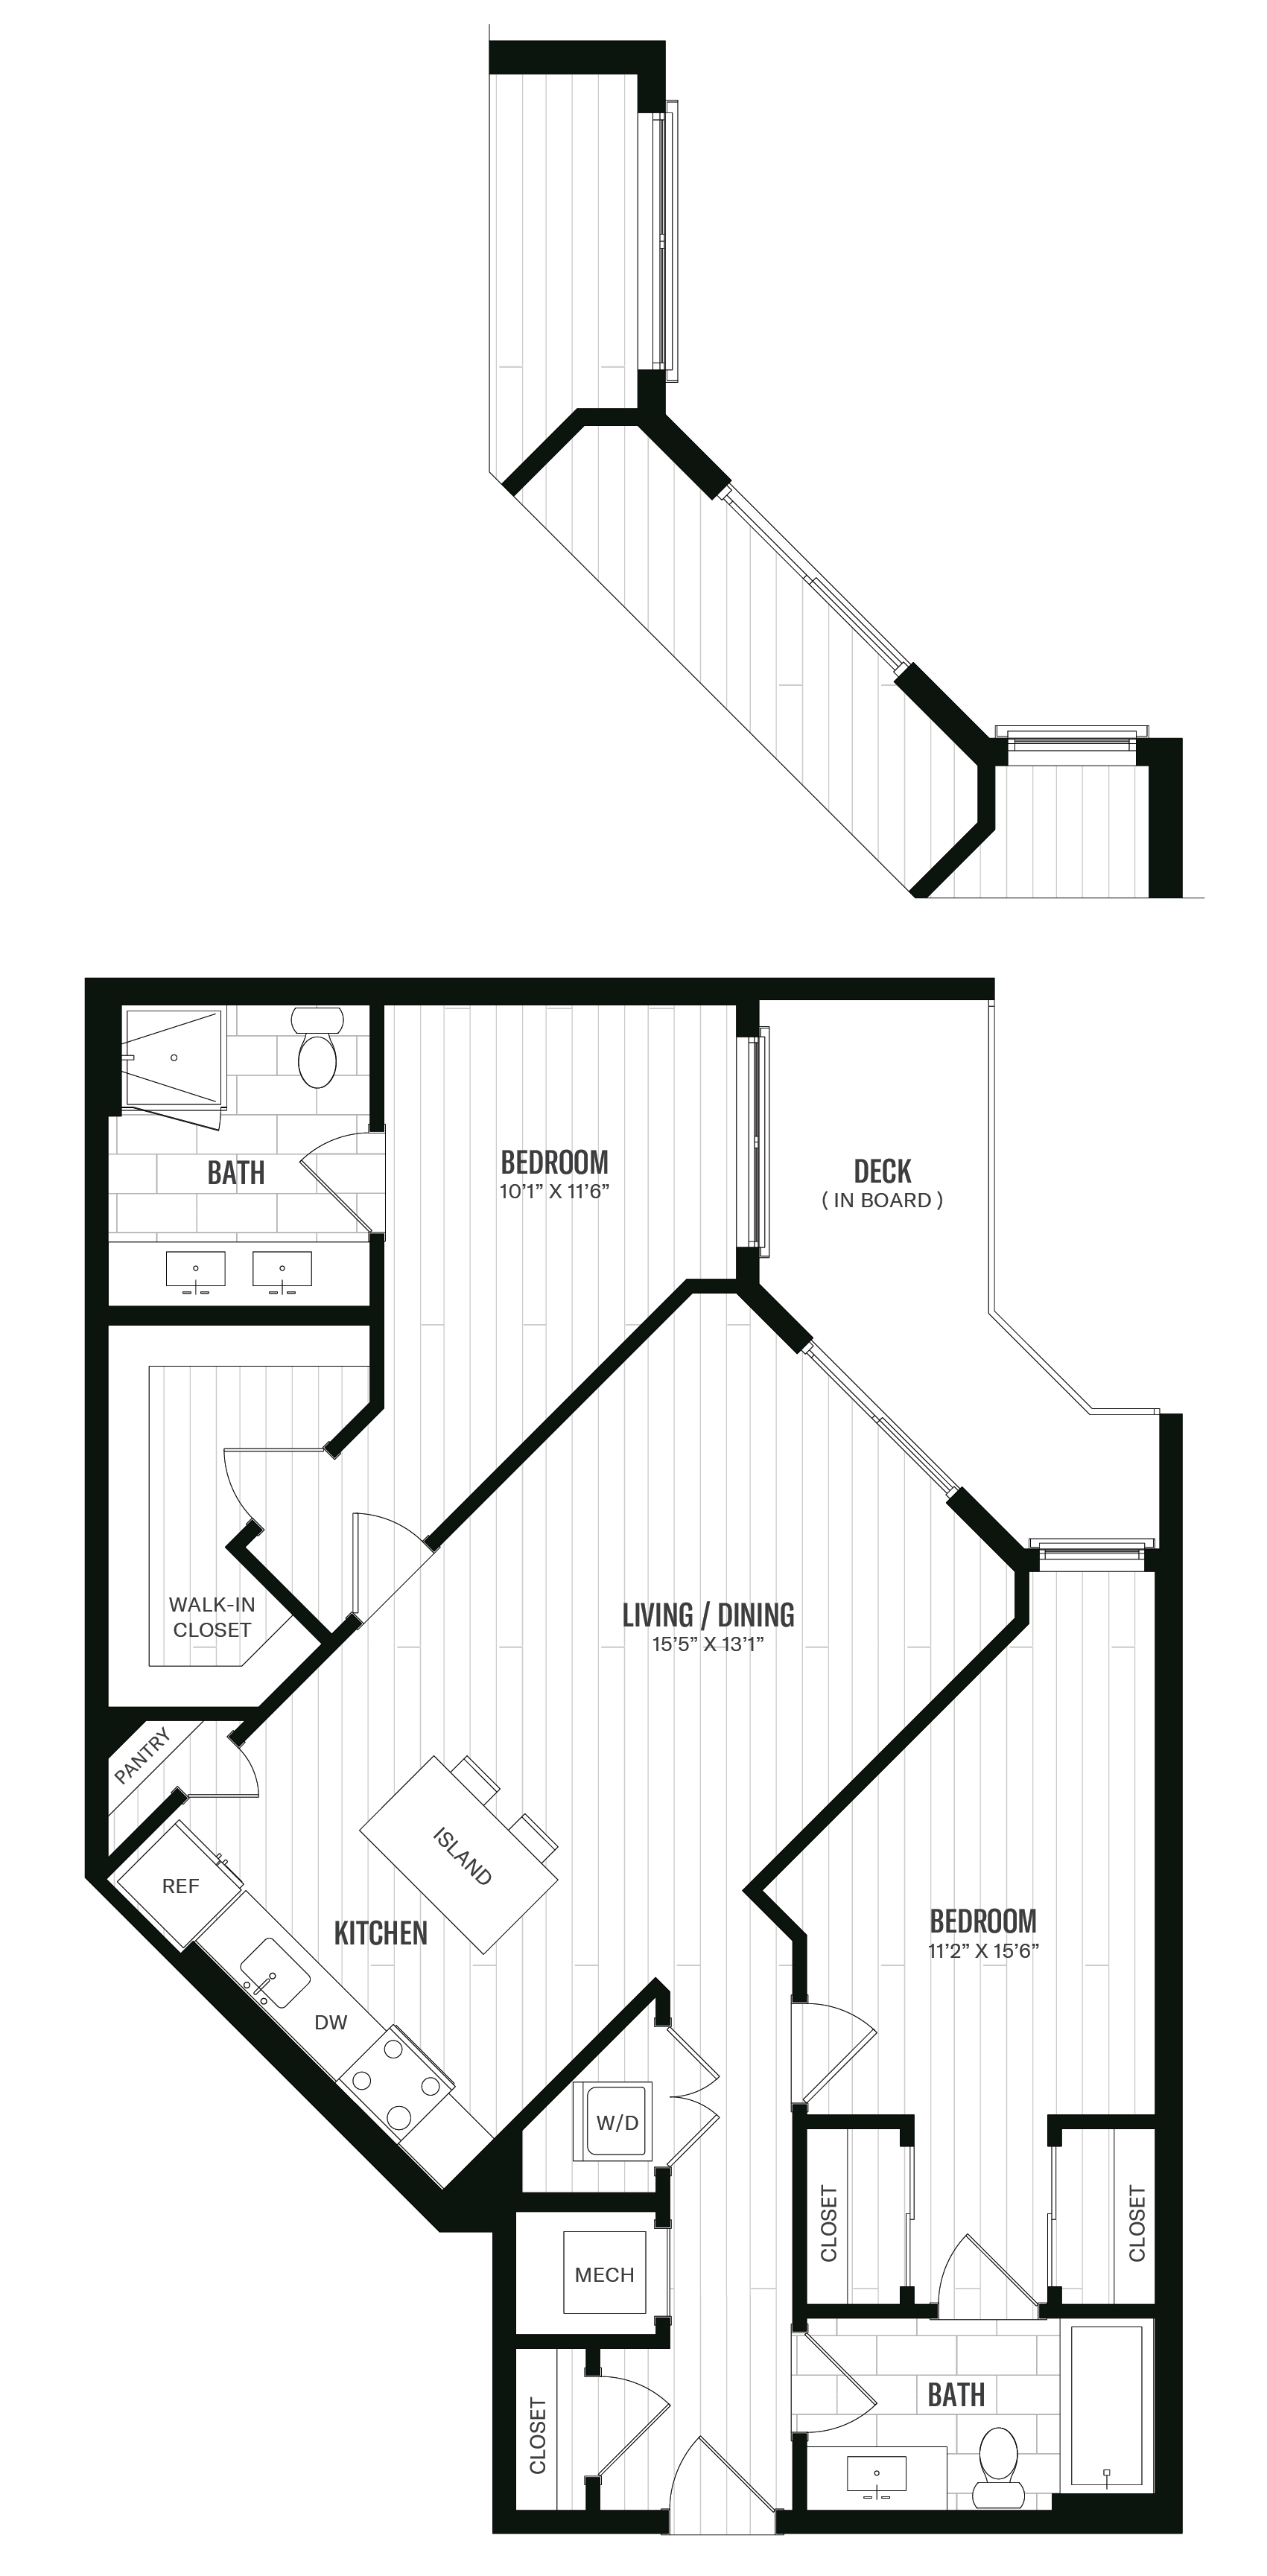 Floorplan image of unit 303